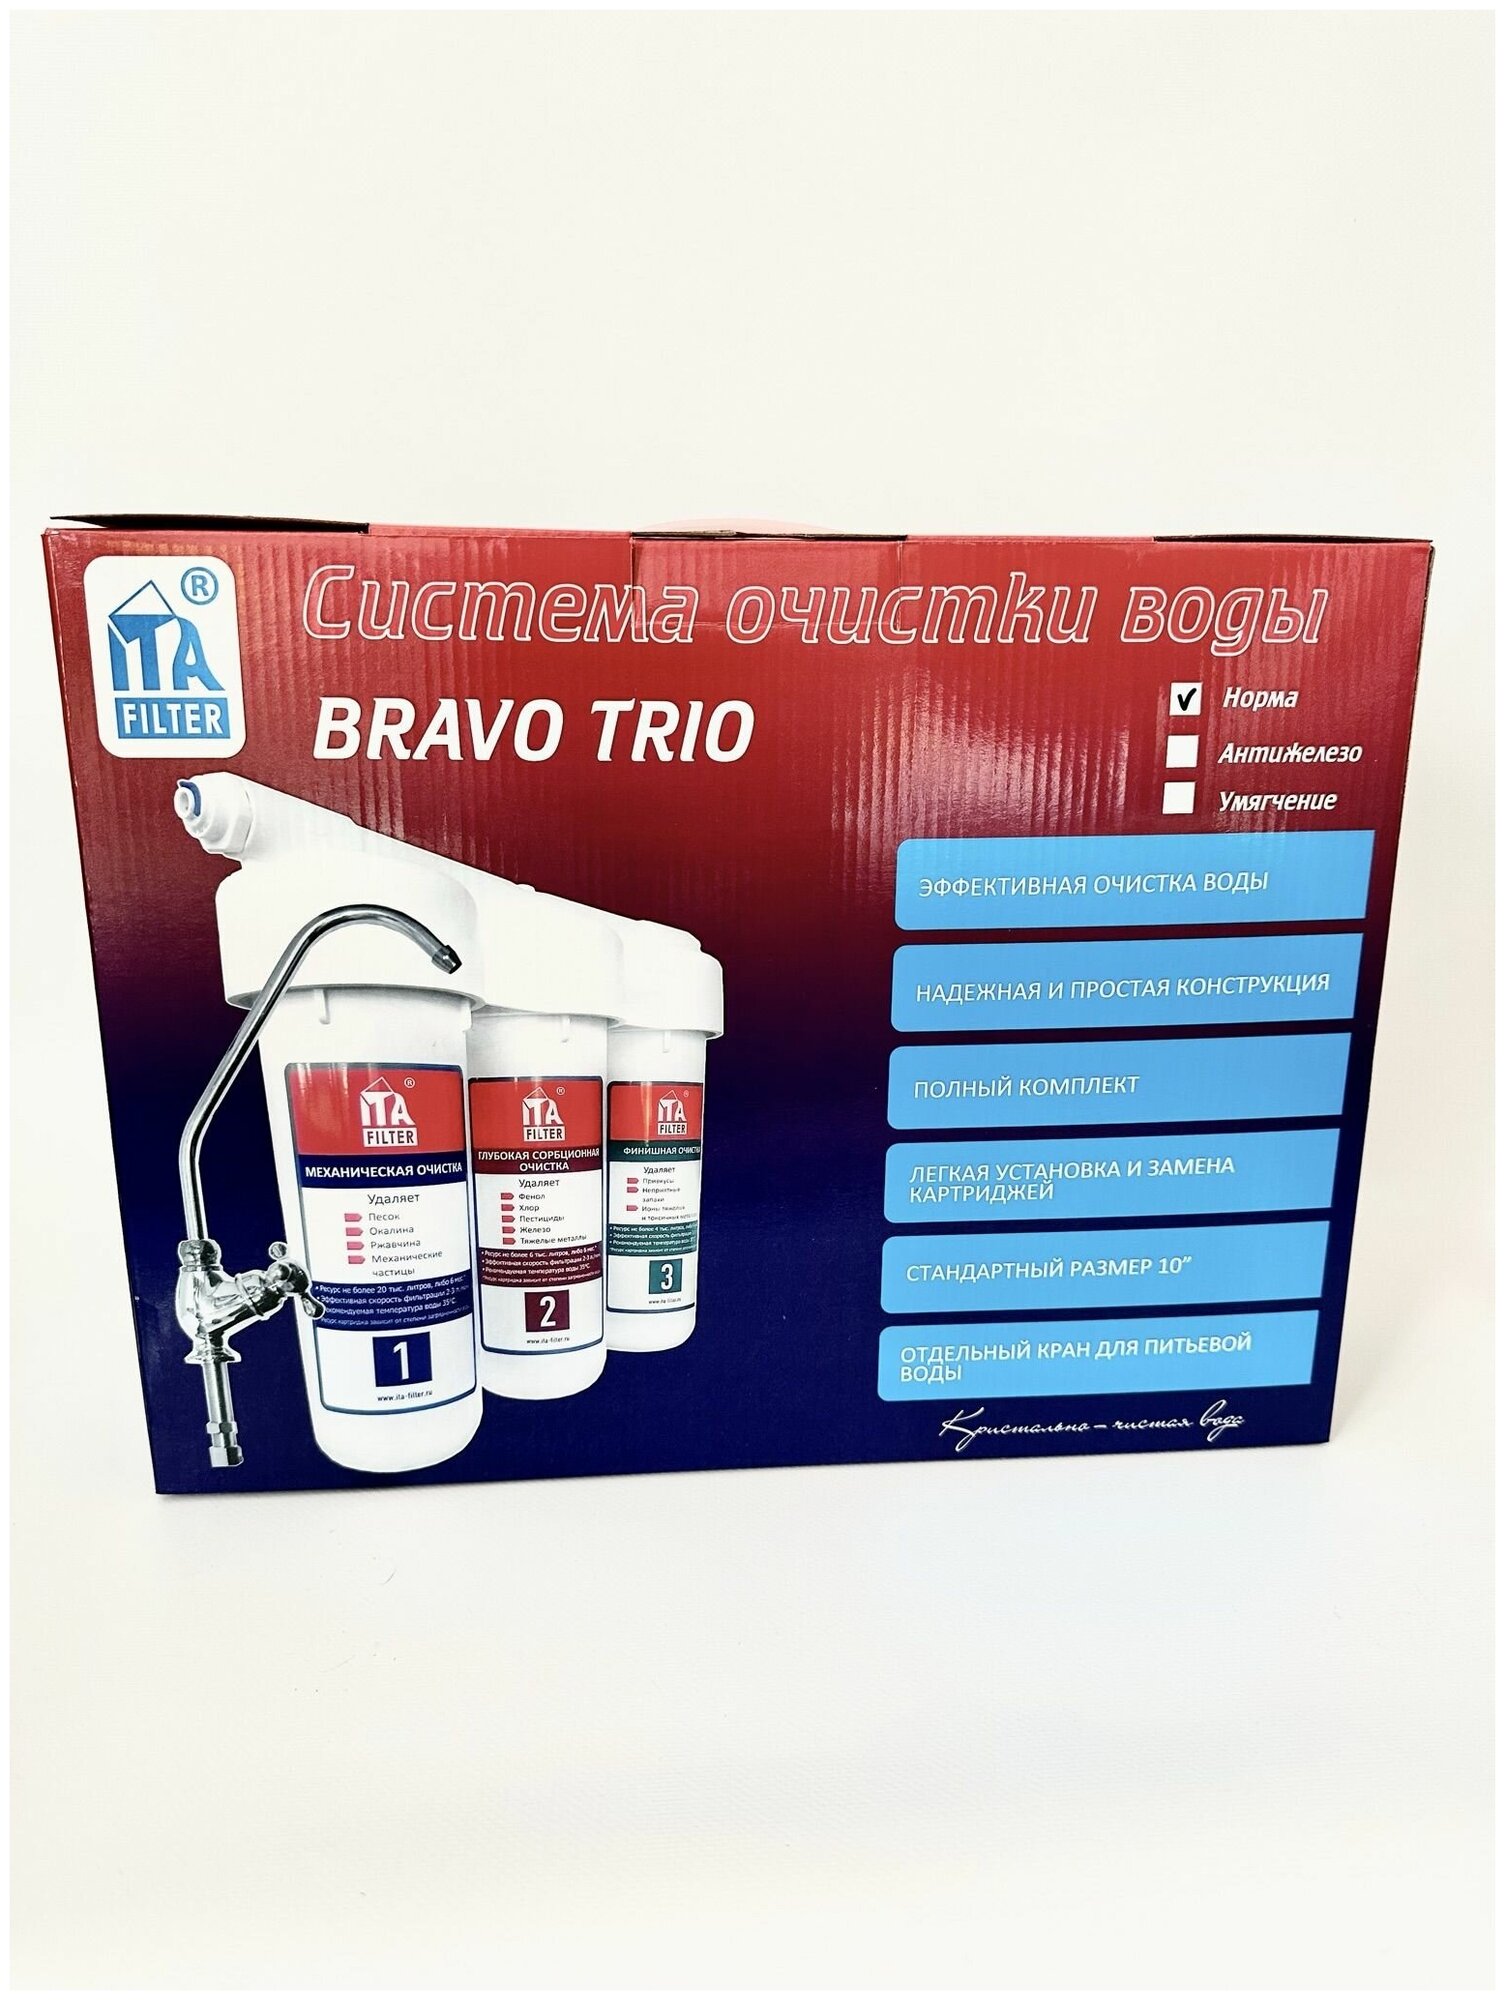 Фильтр для воды "BRAVO TRIO норма"